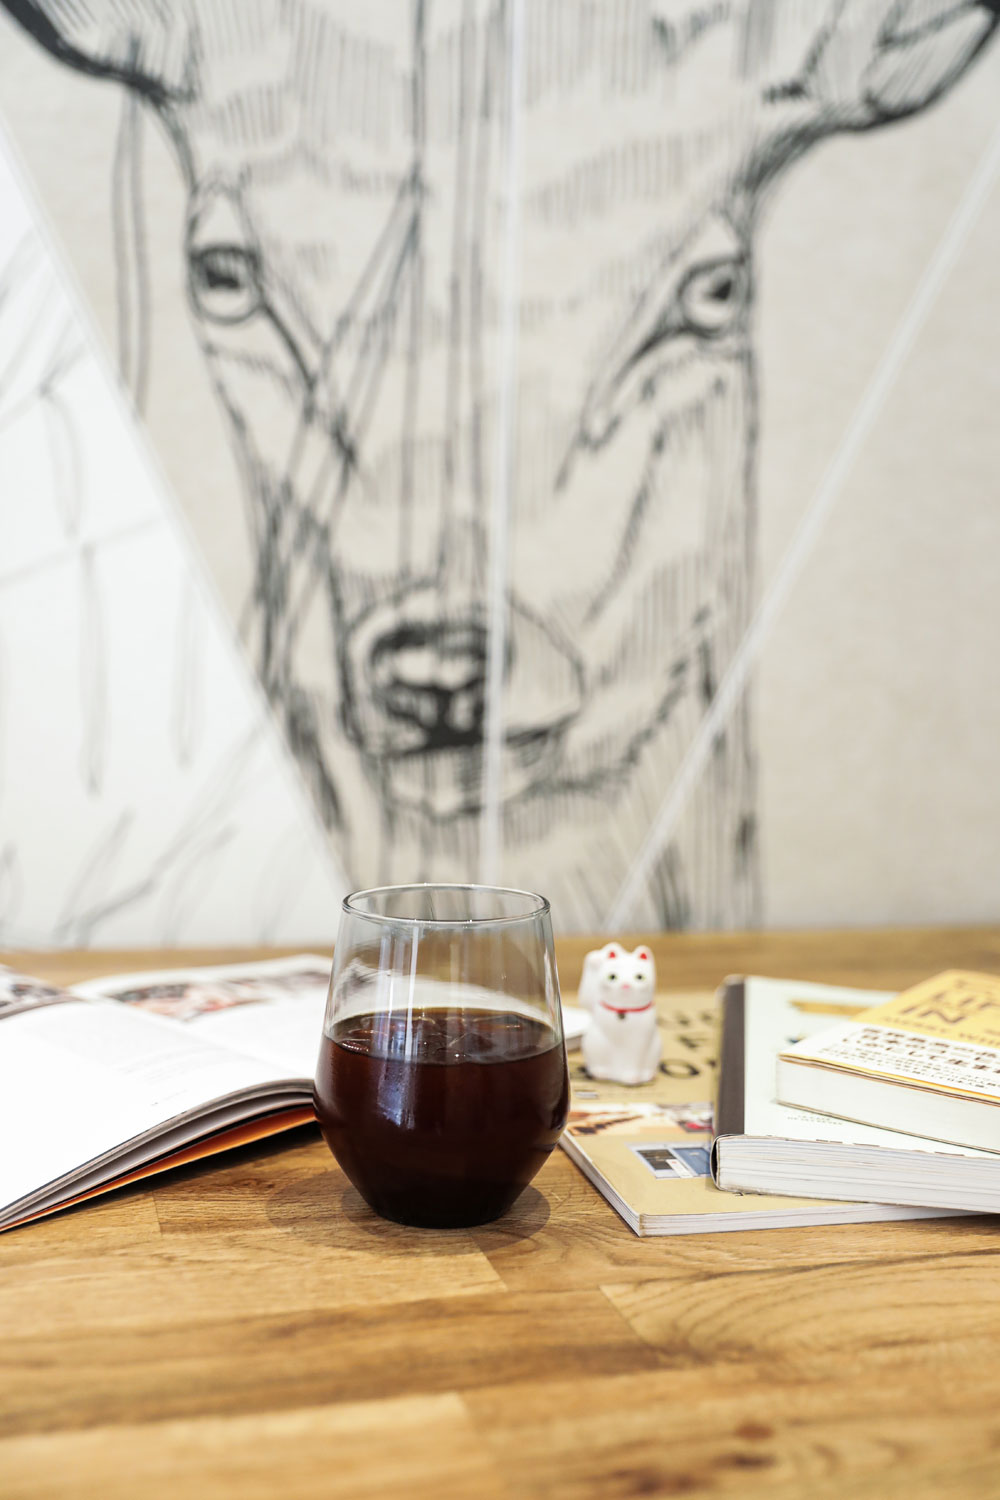 Um das Fernweh zu lindern und gleichzeitig die Vorfreude auf die nächste Reise in den Osten zu feiern, gibt es auf sonrisa exklusive Insider-Tipps zur Kaffee-Kultur in Japan, die man übrigens auch in der Schweiz geniessen kann.